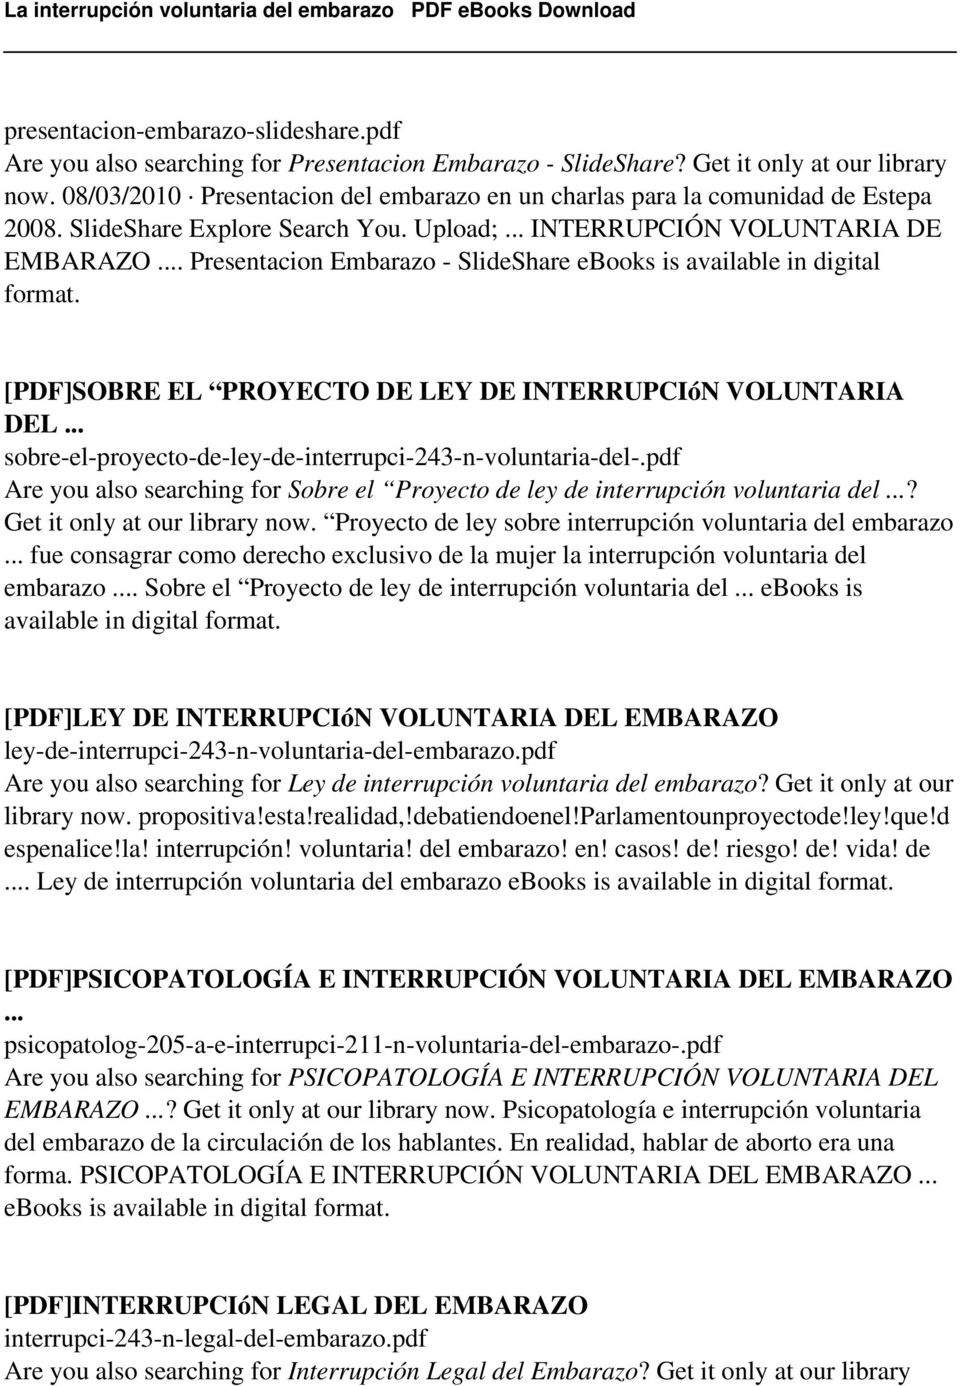 .. Presentacion Embarazo - SlideShare ebooks is available in digital format. [PDF]SOBRE EL PROYECTO DE LEY DE INTERRUPCIóN VOLUNTARIA DEL... sobre-el-proyecto-de-ley-de-interrupci-243-n-voluntaria-del-.